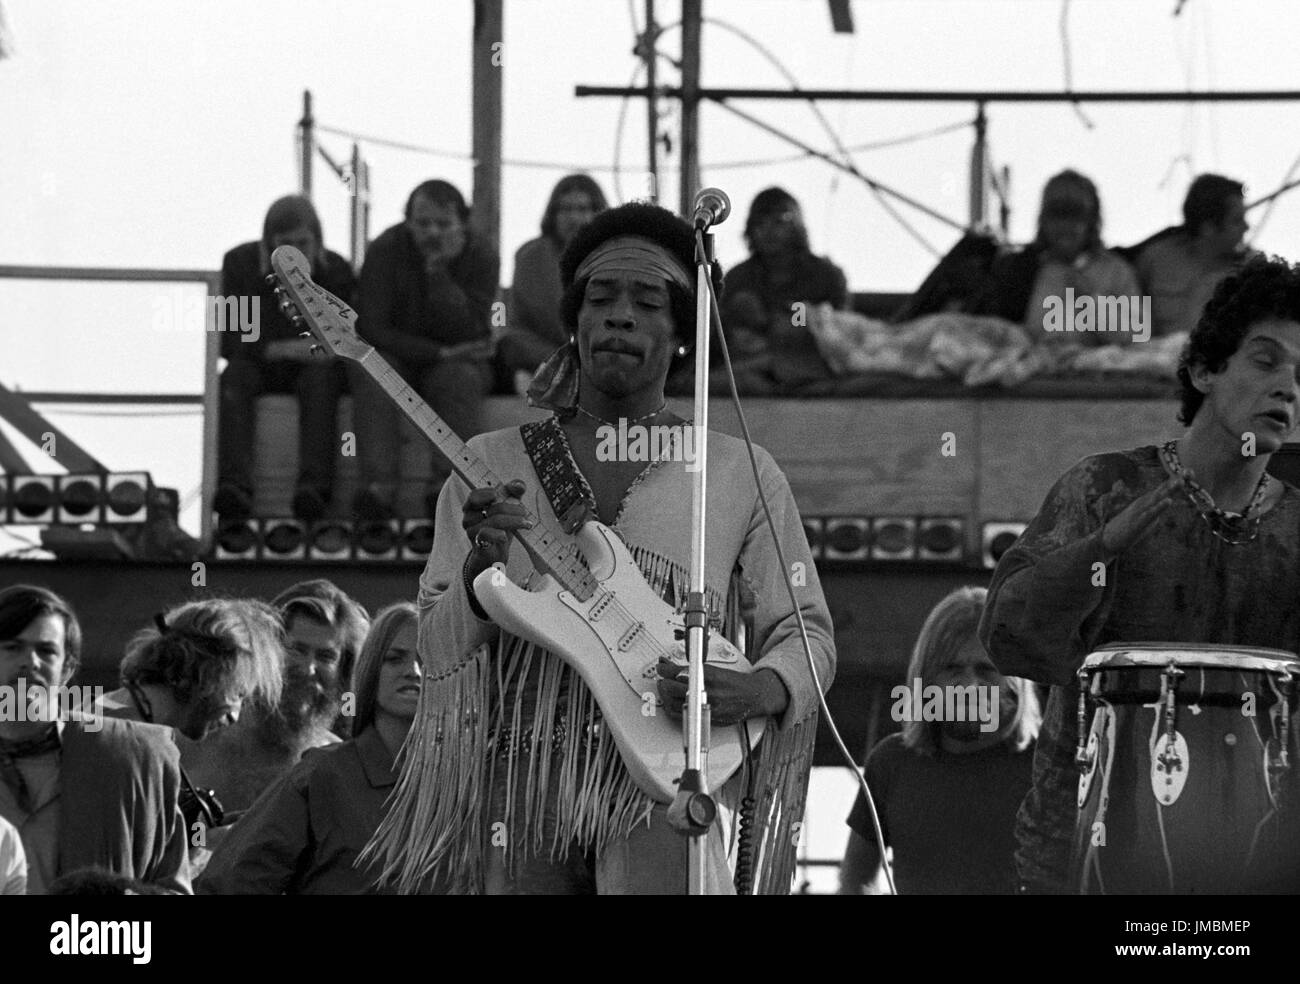 Jimi Hendrix l'exécution de son légendaire 2 heure performance à Woodstock Music & Arts Festival tenue le Sam Yasgur's champ de luzerne dans le comté de Sullivan à Bethal, New York le 18 août 1969. Hendrix a insisté pour qu'il près le festival et devait comparaître à minuit, mais en raison de retards n'a pas pris la scène jusqu'à 9 h le lundi matin. La plupart de la foule avait quitté pour la maison d'ici là et avait diminué de pas moins de 500 000 $ à 80 000 misérables. ** Les taux plus élevés s'appliquent ** APPEL À NÉGOCIER ** © Peter Tarnoff / MediaPunch Banque D'Images